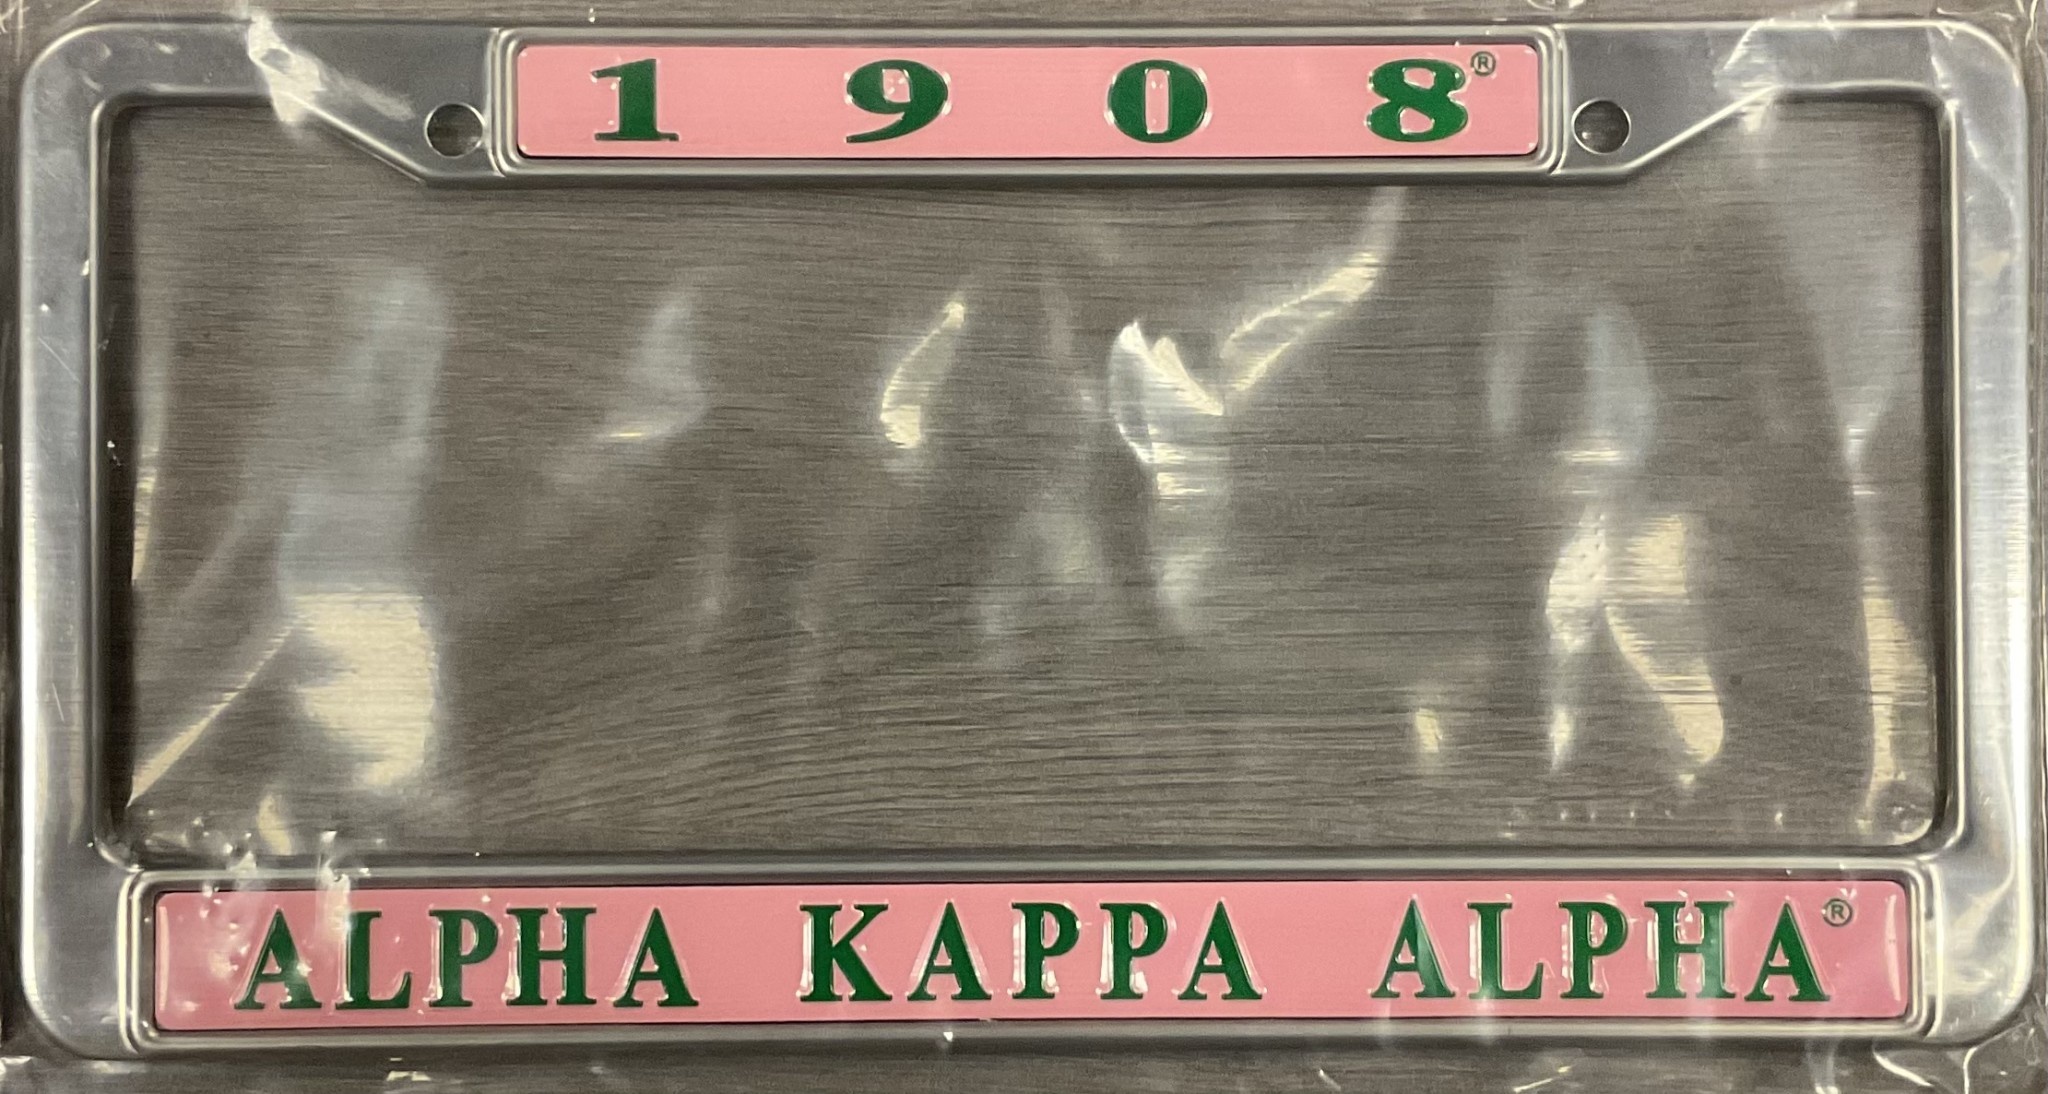 ΑΚΑ Pink and Green License Plate